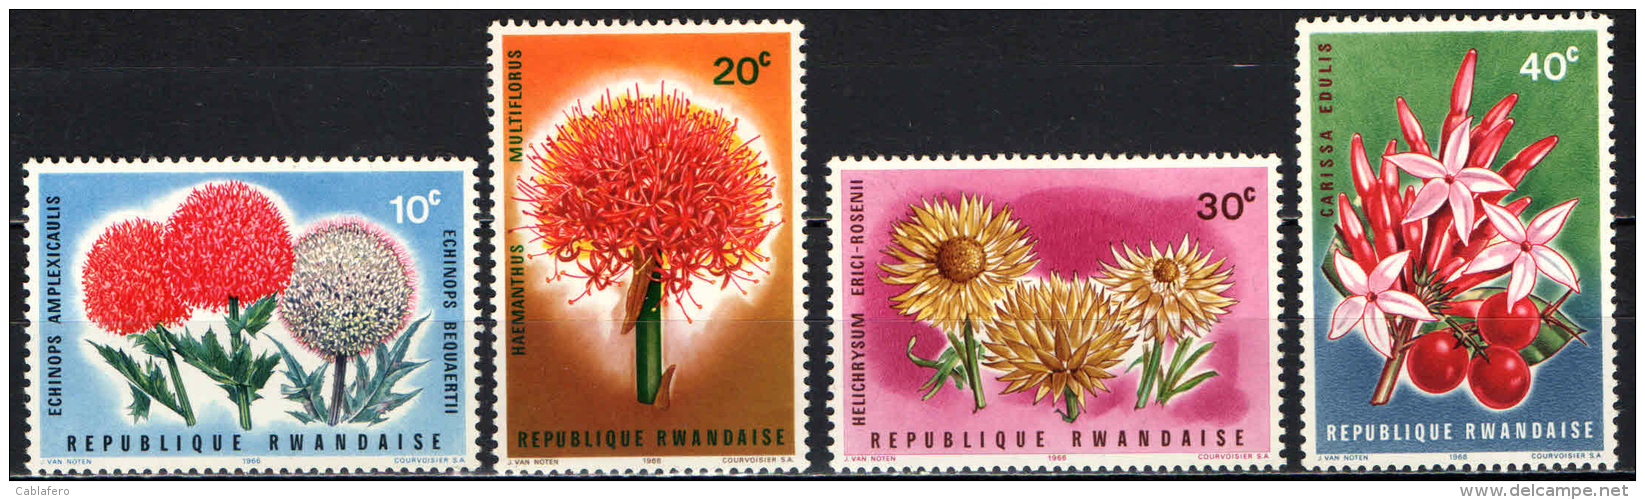 RWANDA - 1966 - FIORI - FLOWERS - MH - Nuovi